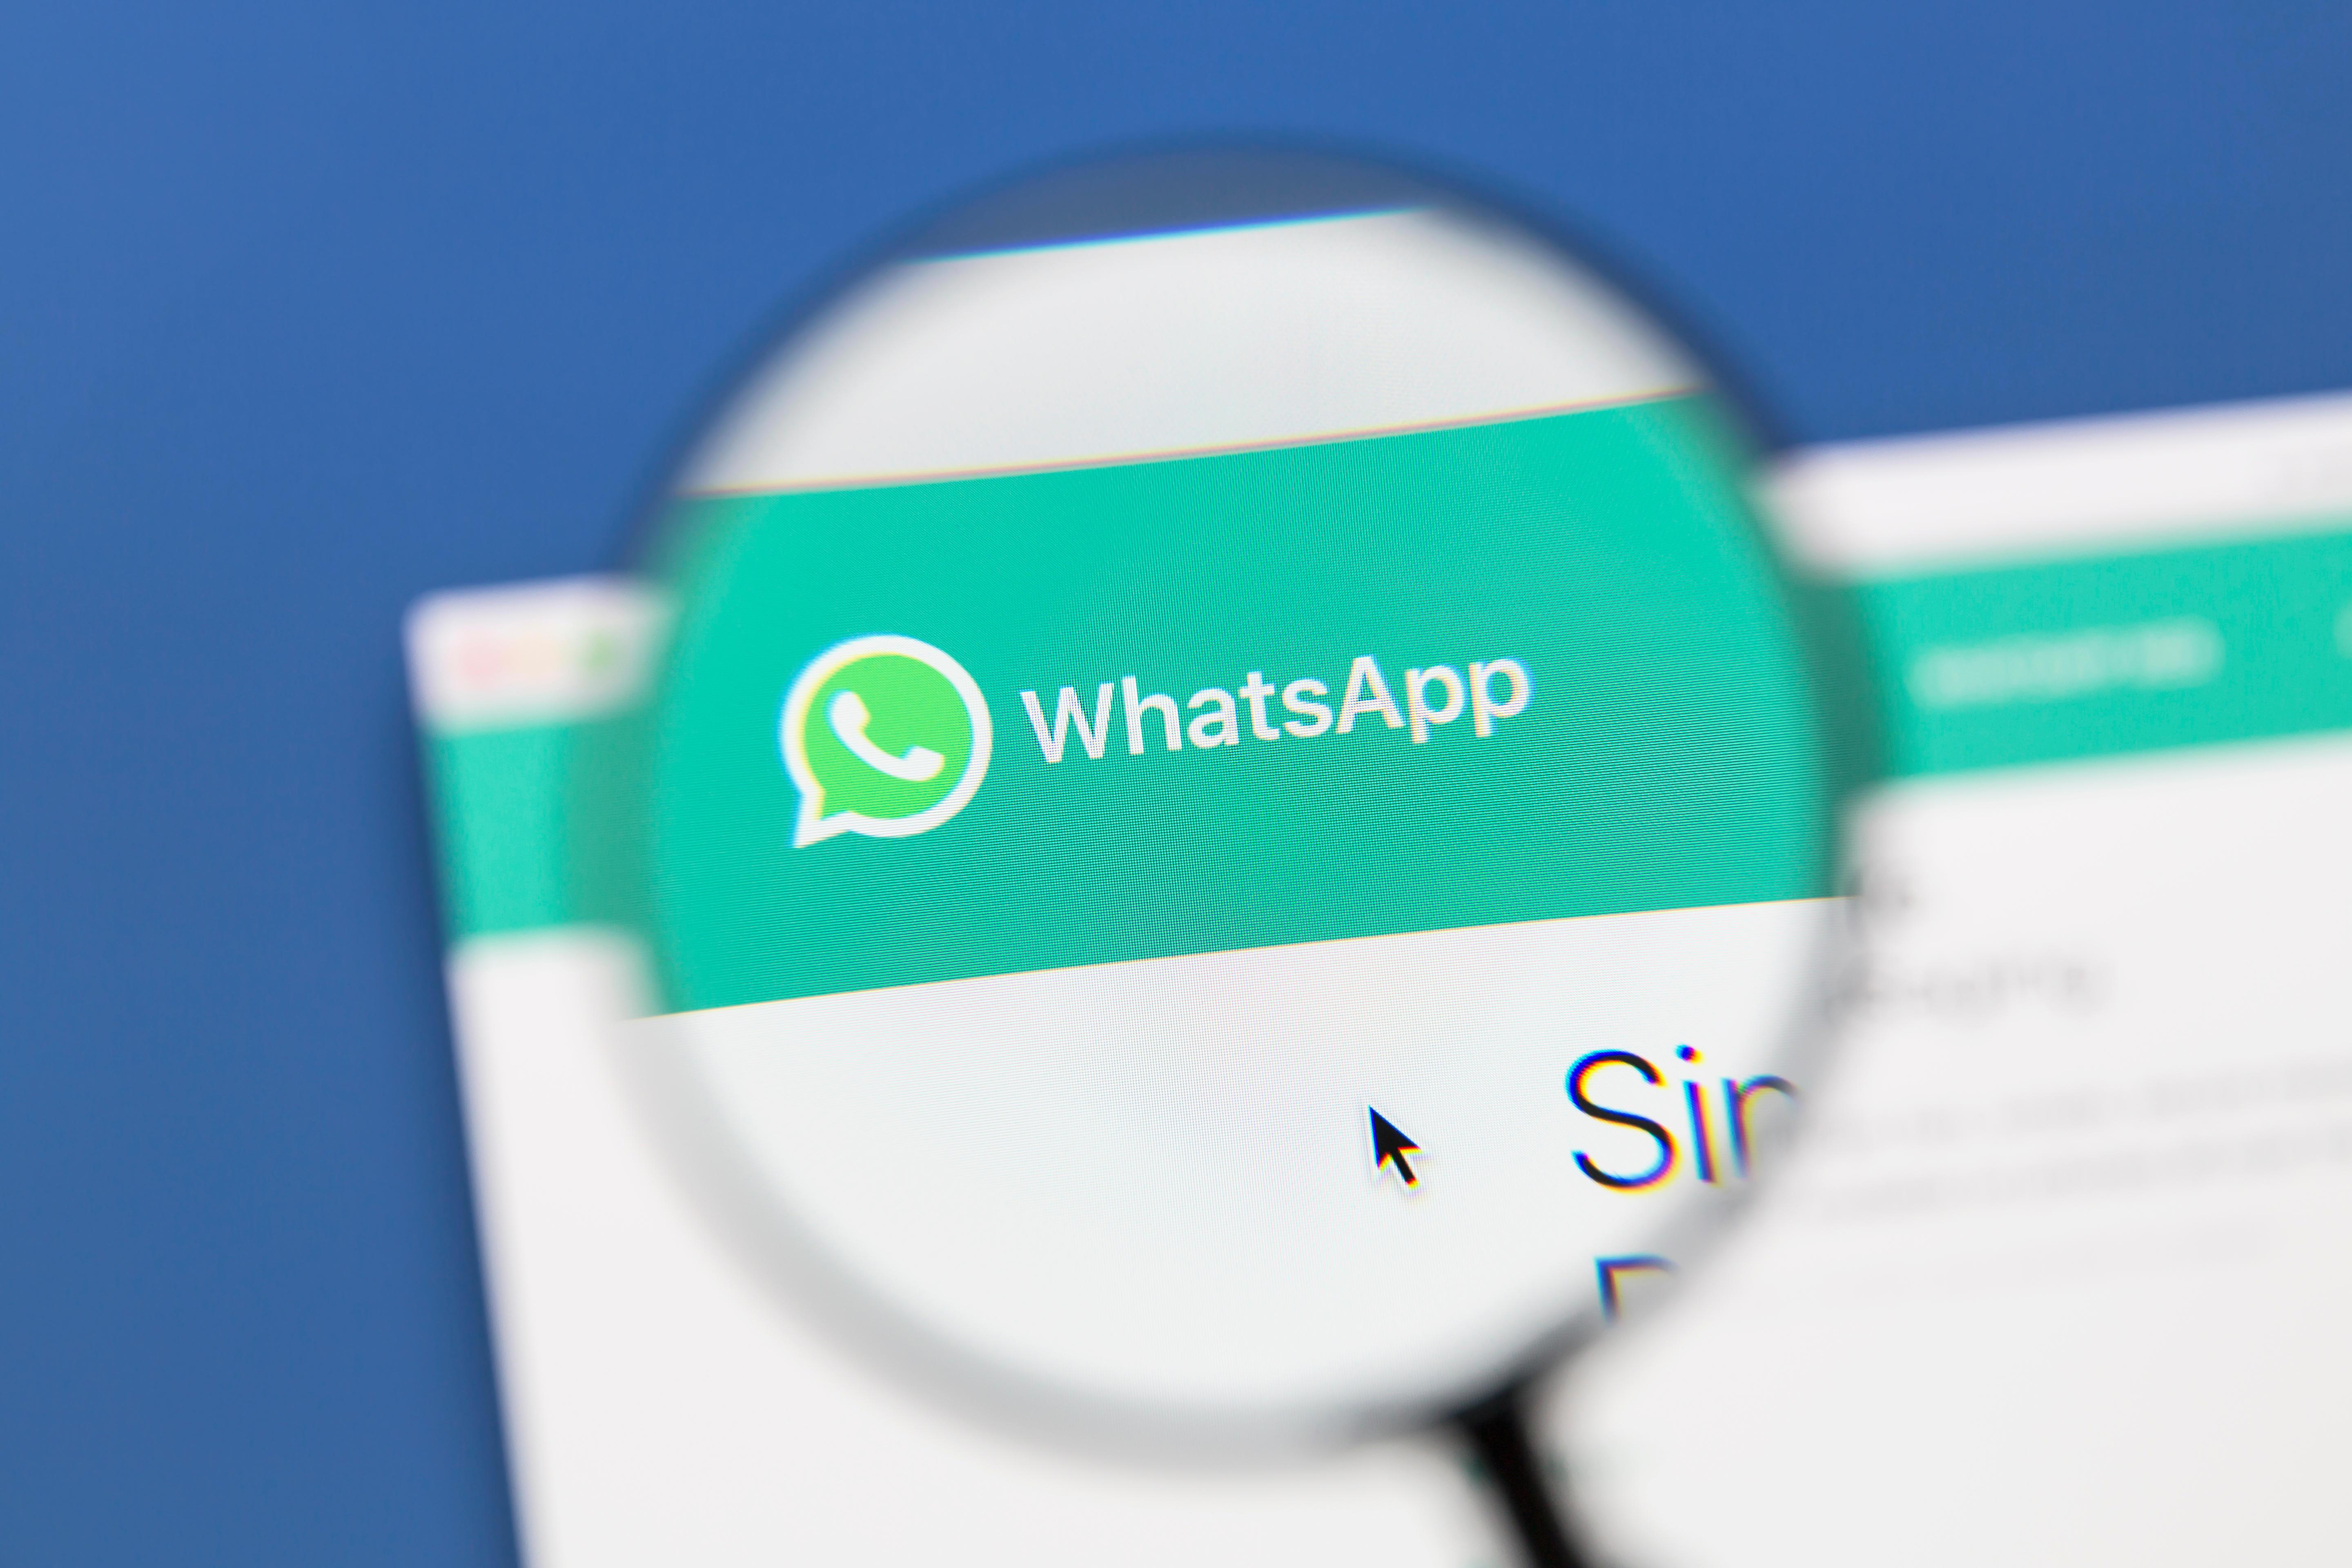     Whatsapp-fel - Experter undrar varför problemet inte har åtgärdats